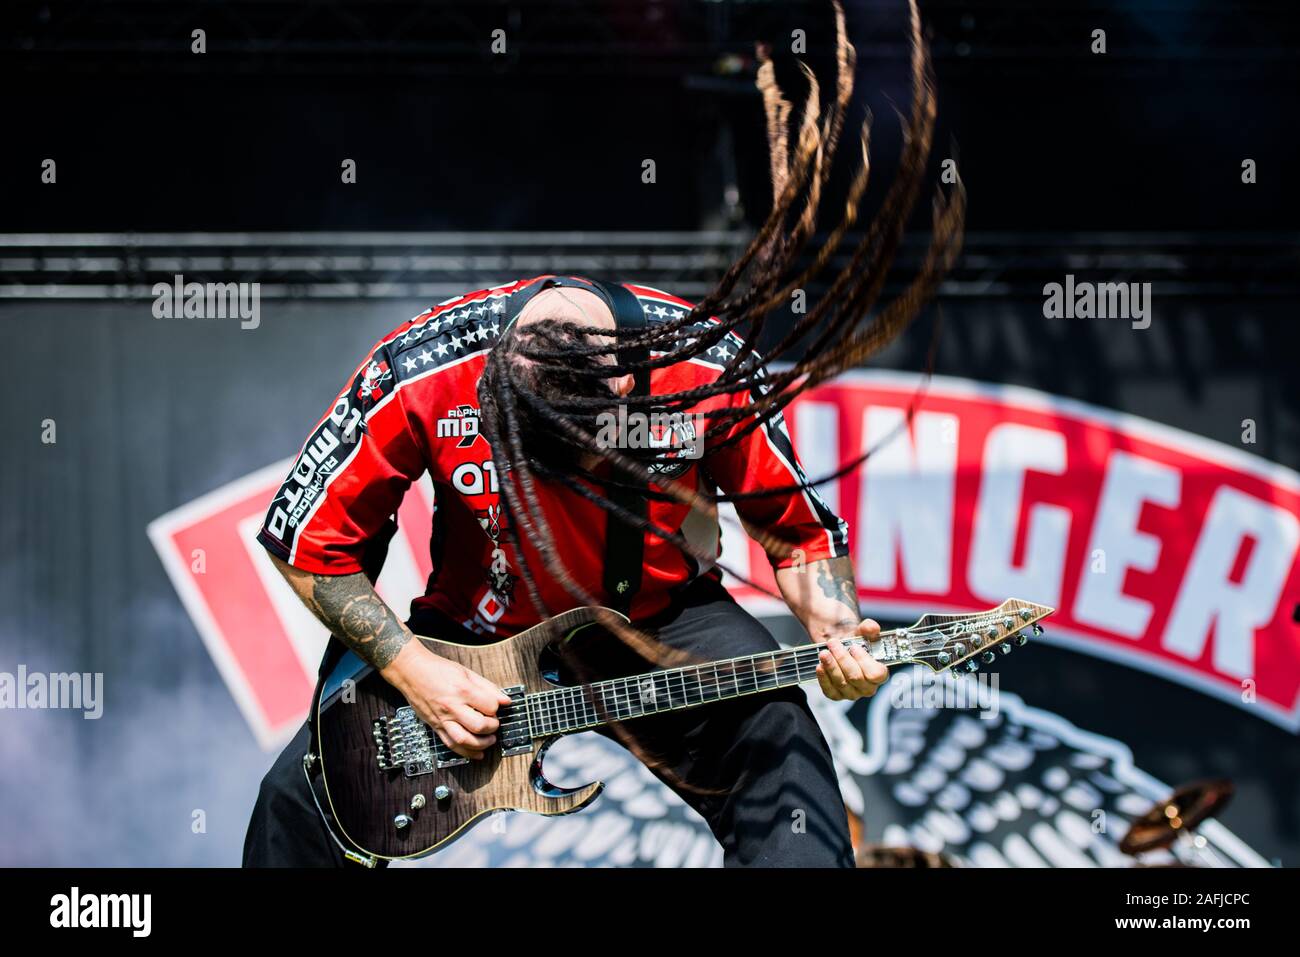 Monaco di Baviera, Germania - 31 Maggio: Zoltan Bathory, chitarrista della American metal band cinque dita morte punzone (5FDP) esecuzione dal vivo presso il festival Rockavaria il 31 maggio 2015 a Monaco di Baviera, Germania. Foto Stock